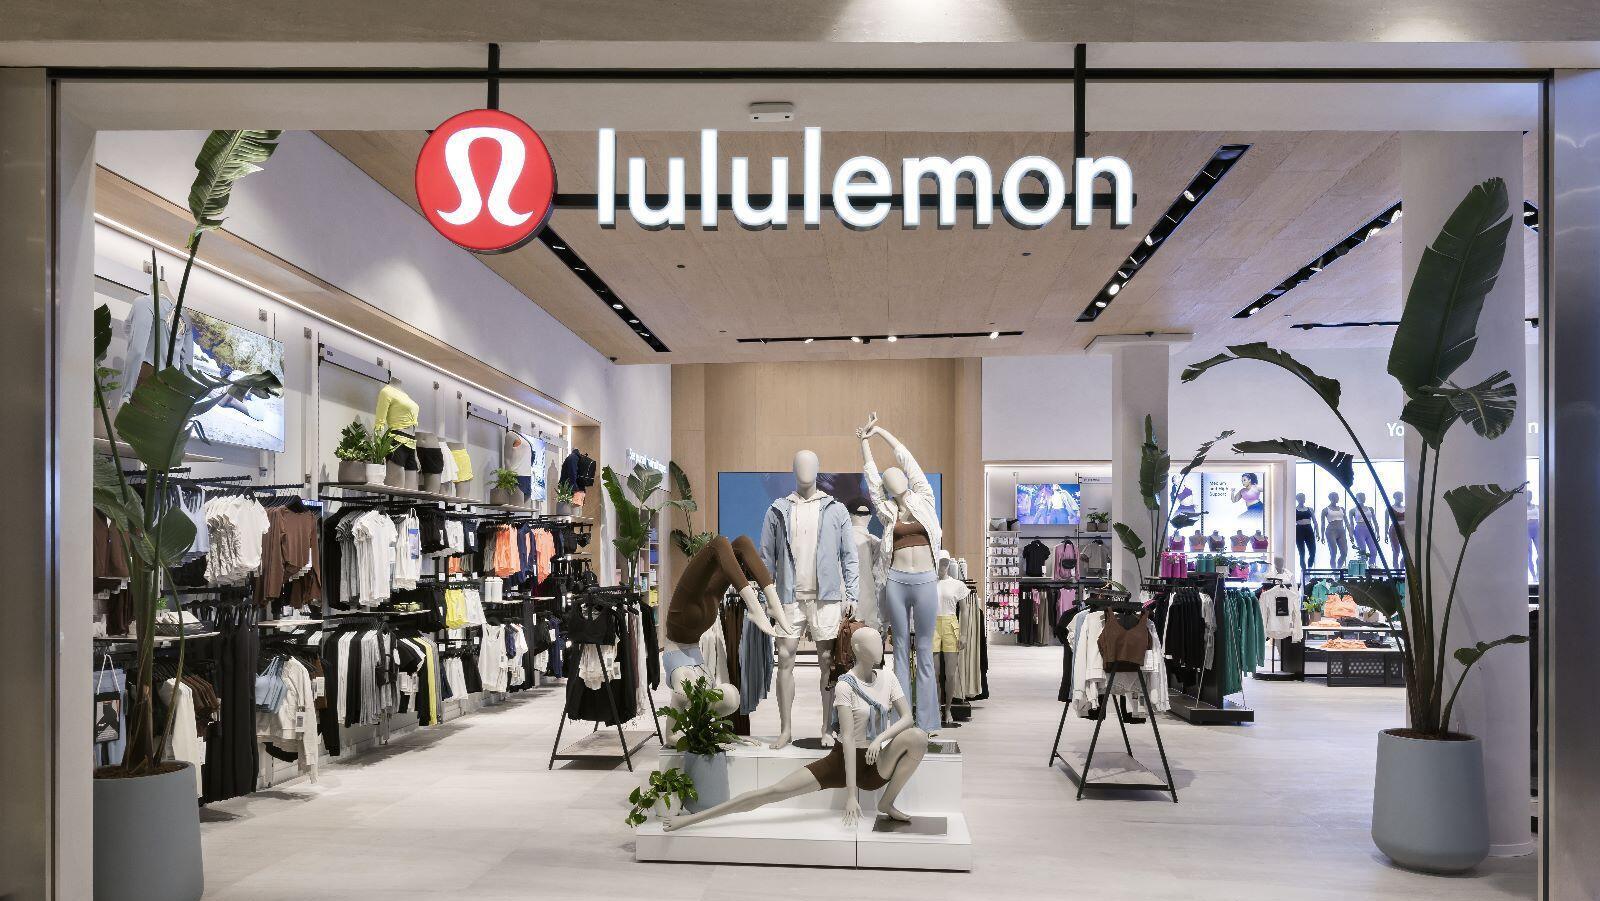 חנות של לולולמון בקניון רמת אביב lululemon